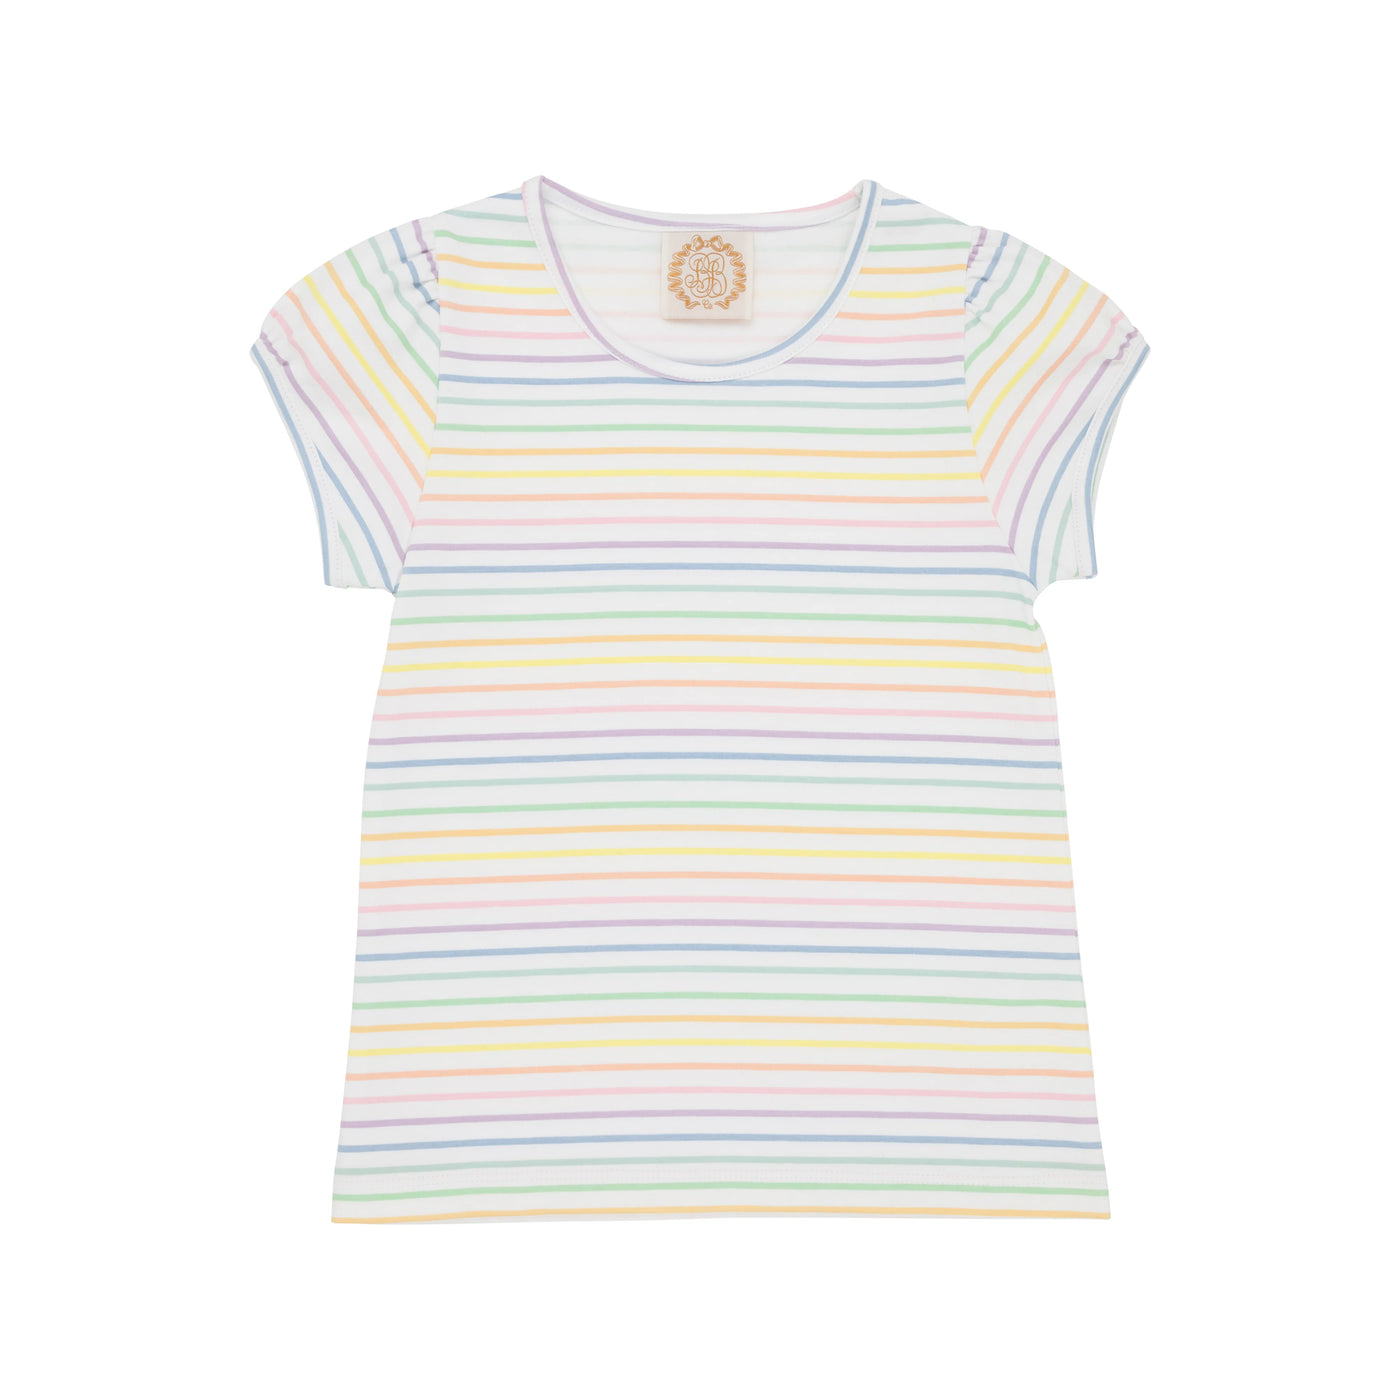 Penny's Play Shirt & Onesie - Rainbow Rollerskate Stripe